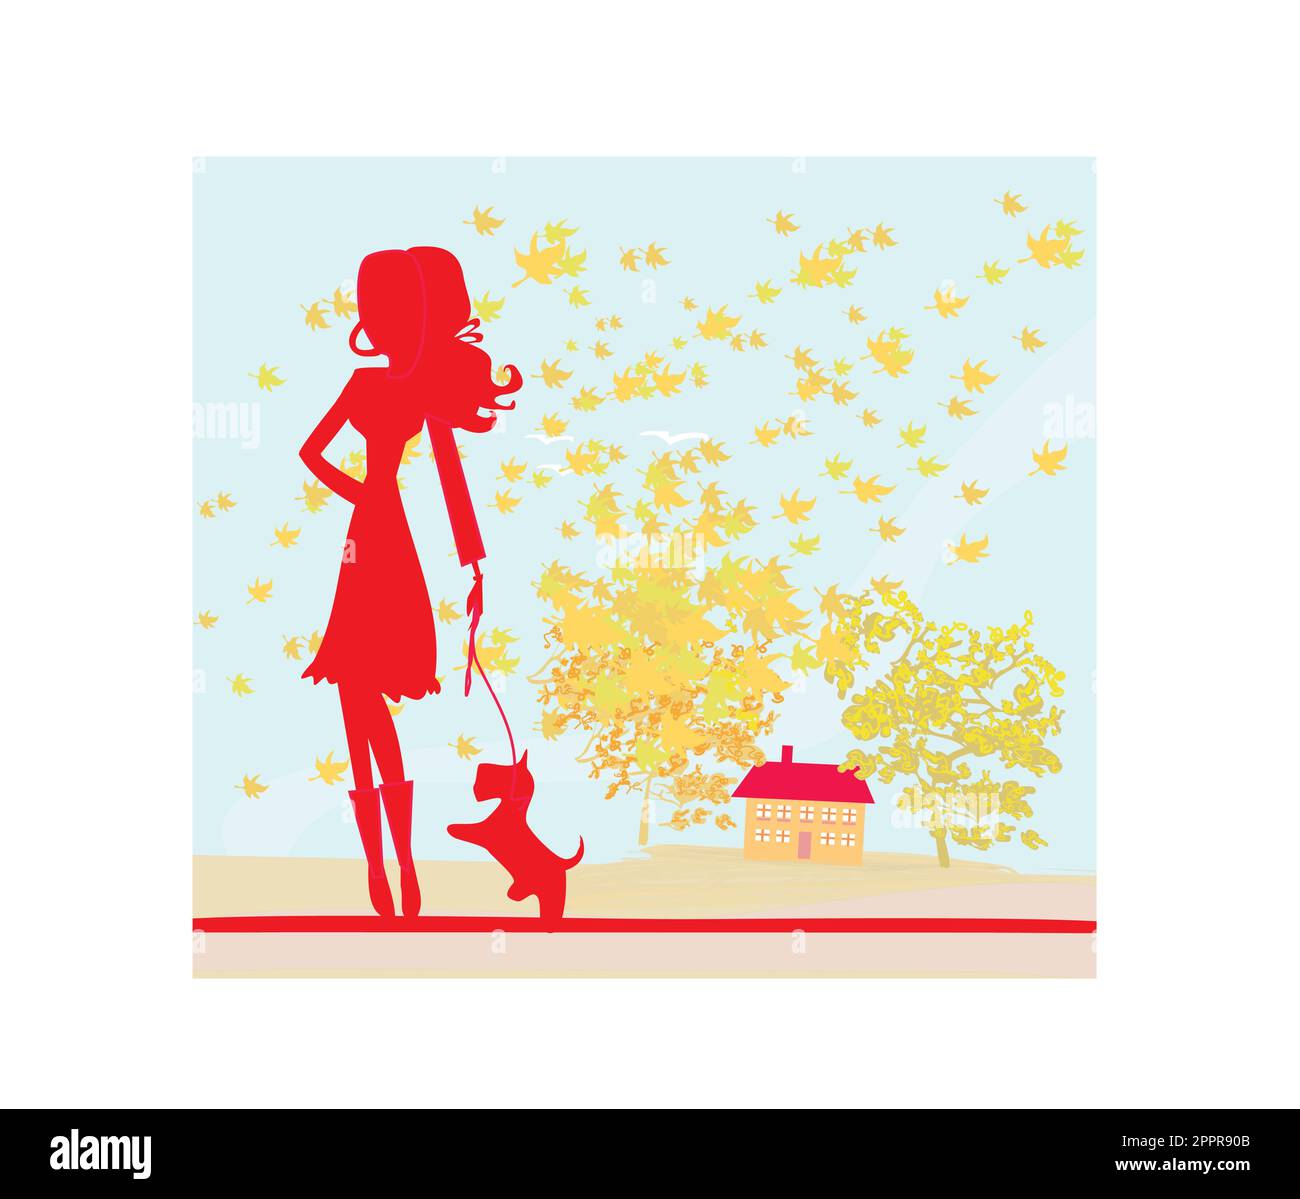 Fille qui marche avec son chien dans un paysage d'automne. Illustration de Vecteur